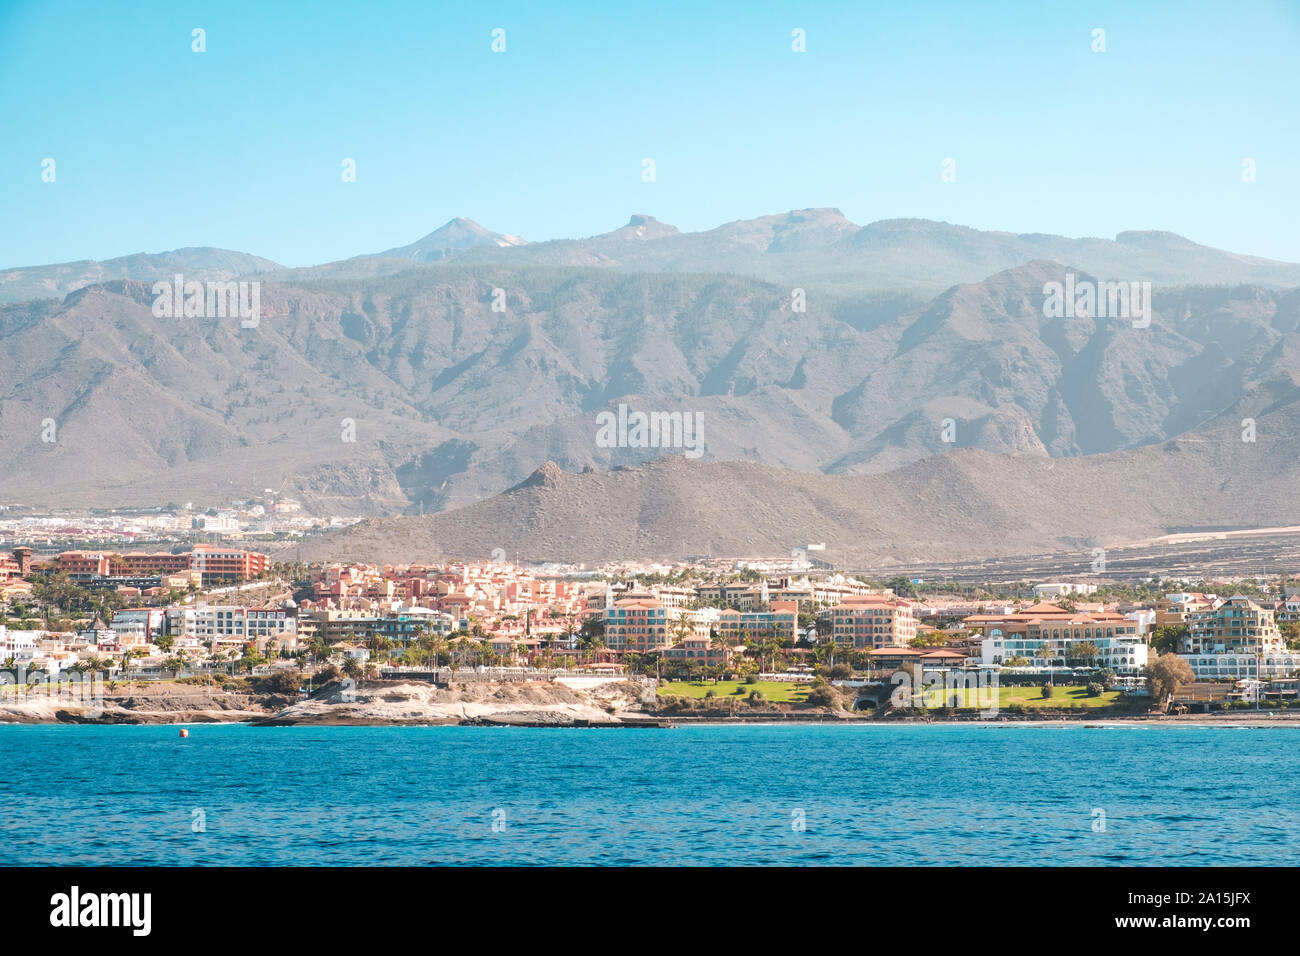 Stadt mit Hotel Gebäude an der Küste mit Blick auf die Berge Landschaft Hintergrund - ocean view auf Teneriffa Stockfoto